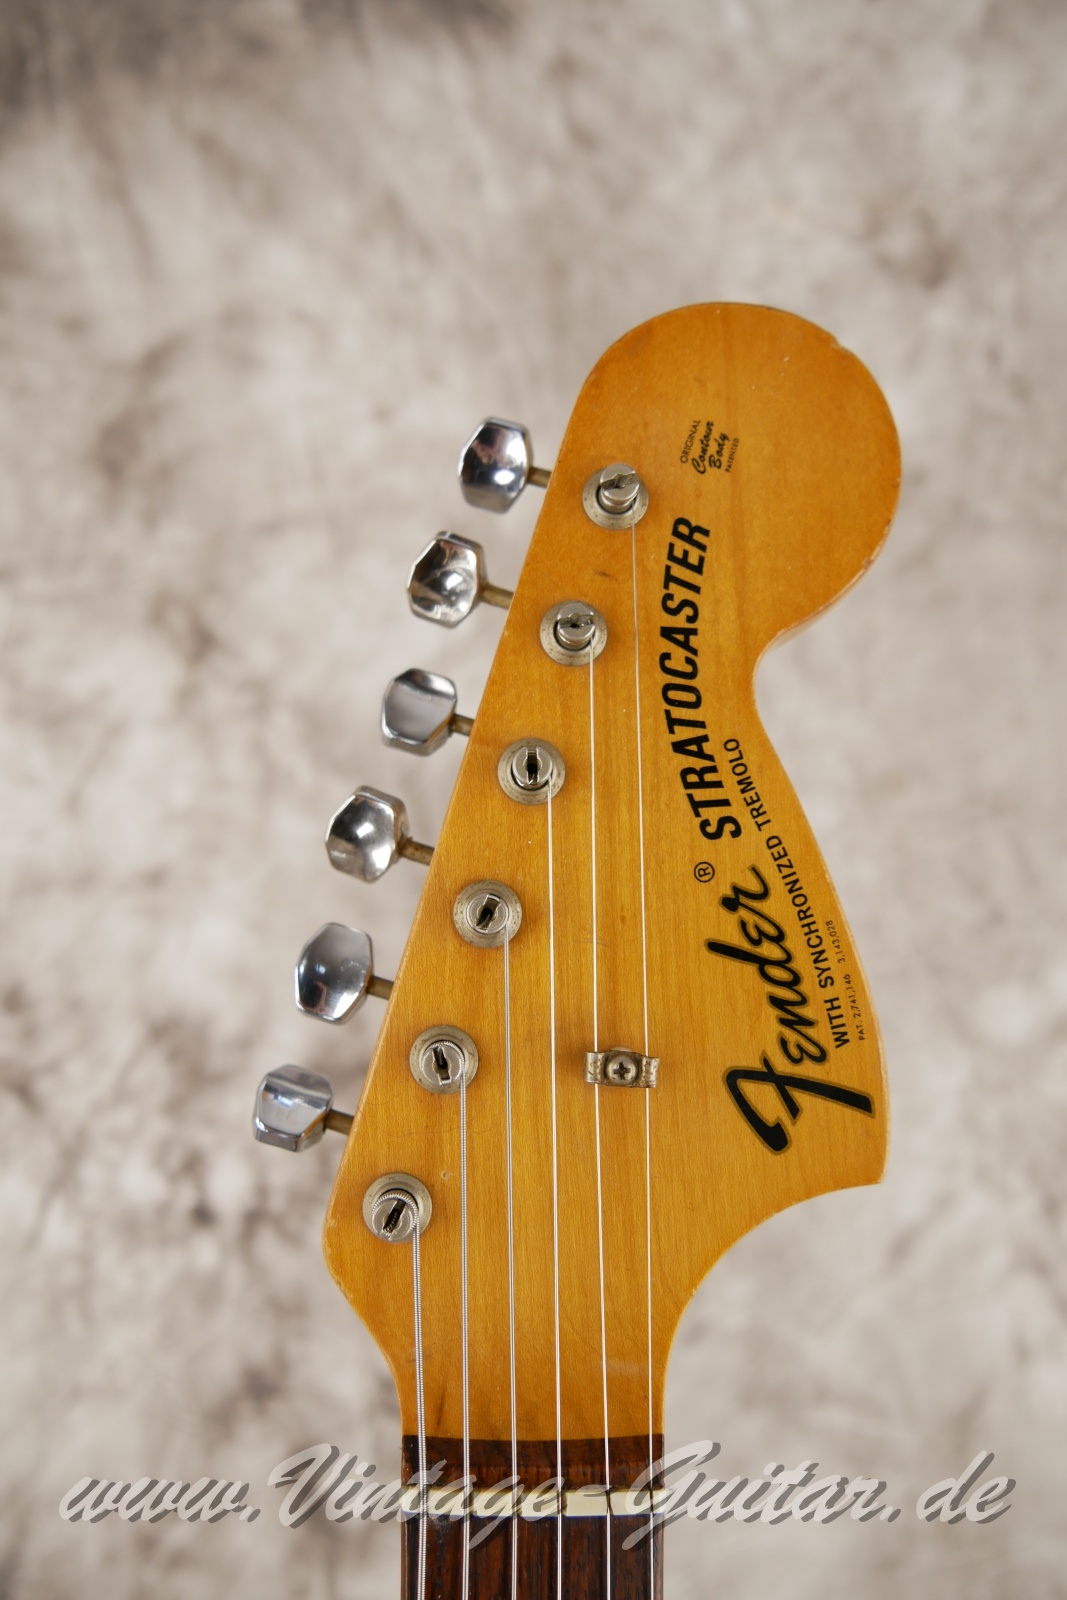 Fender_Stratocaster_sunburst_4hole_1971-003.JPG